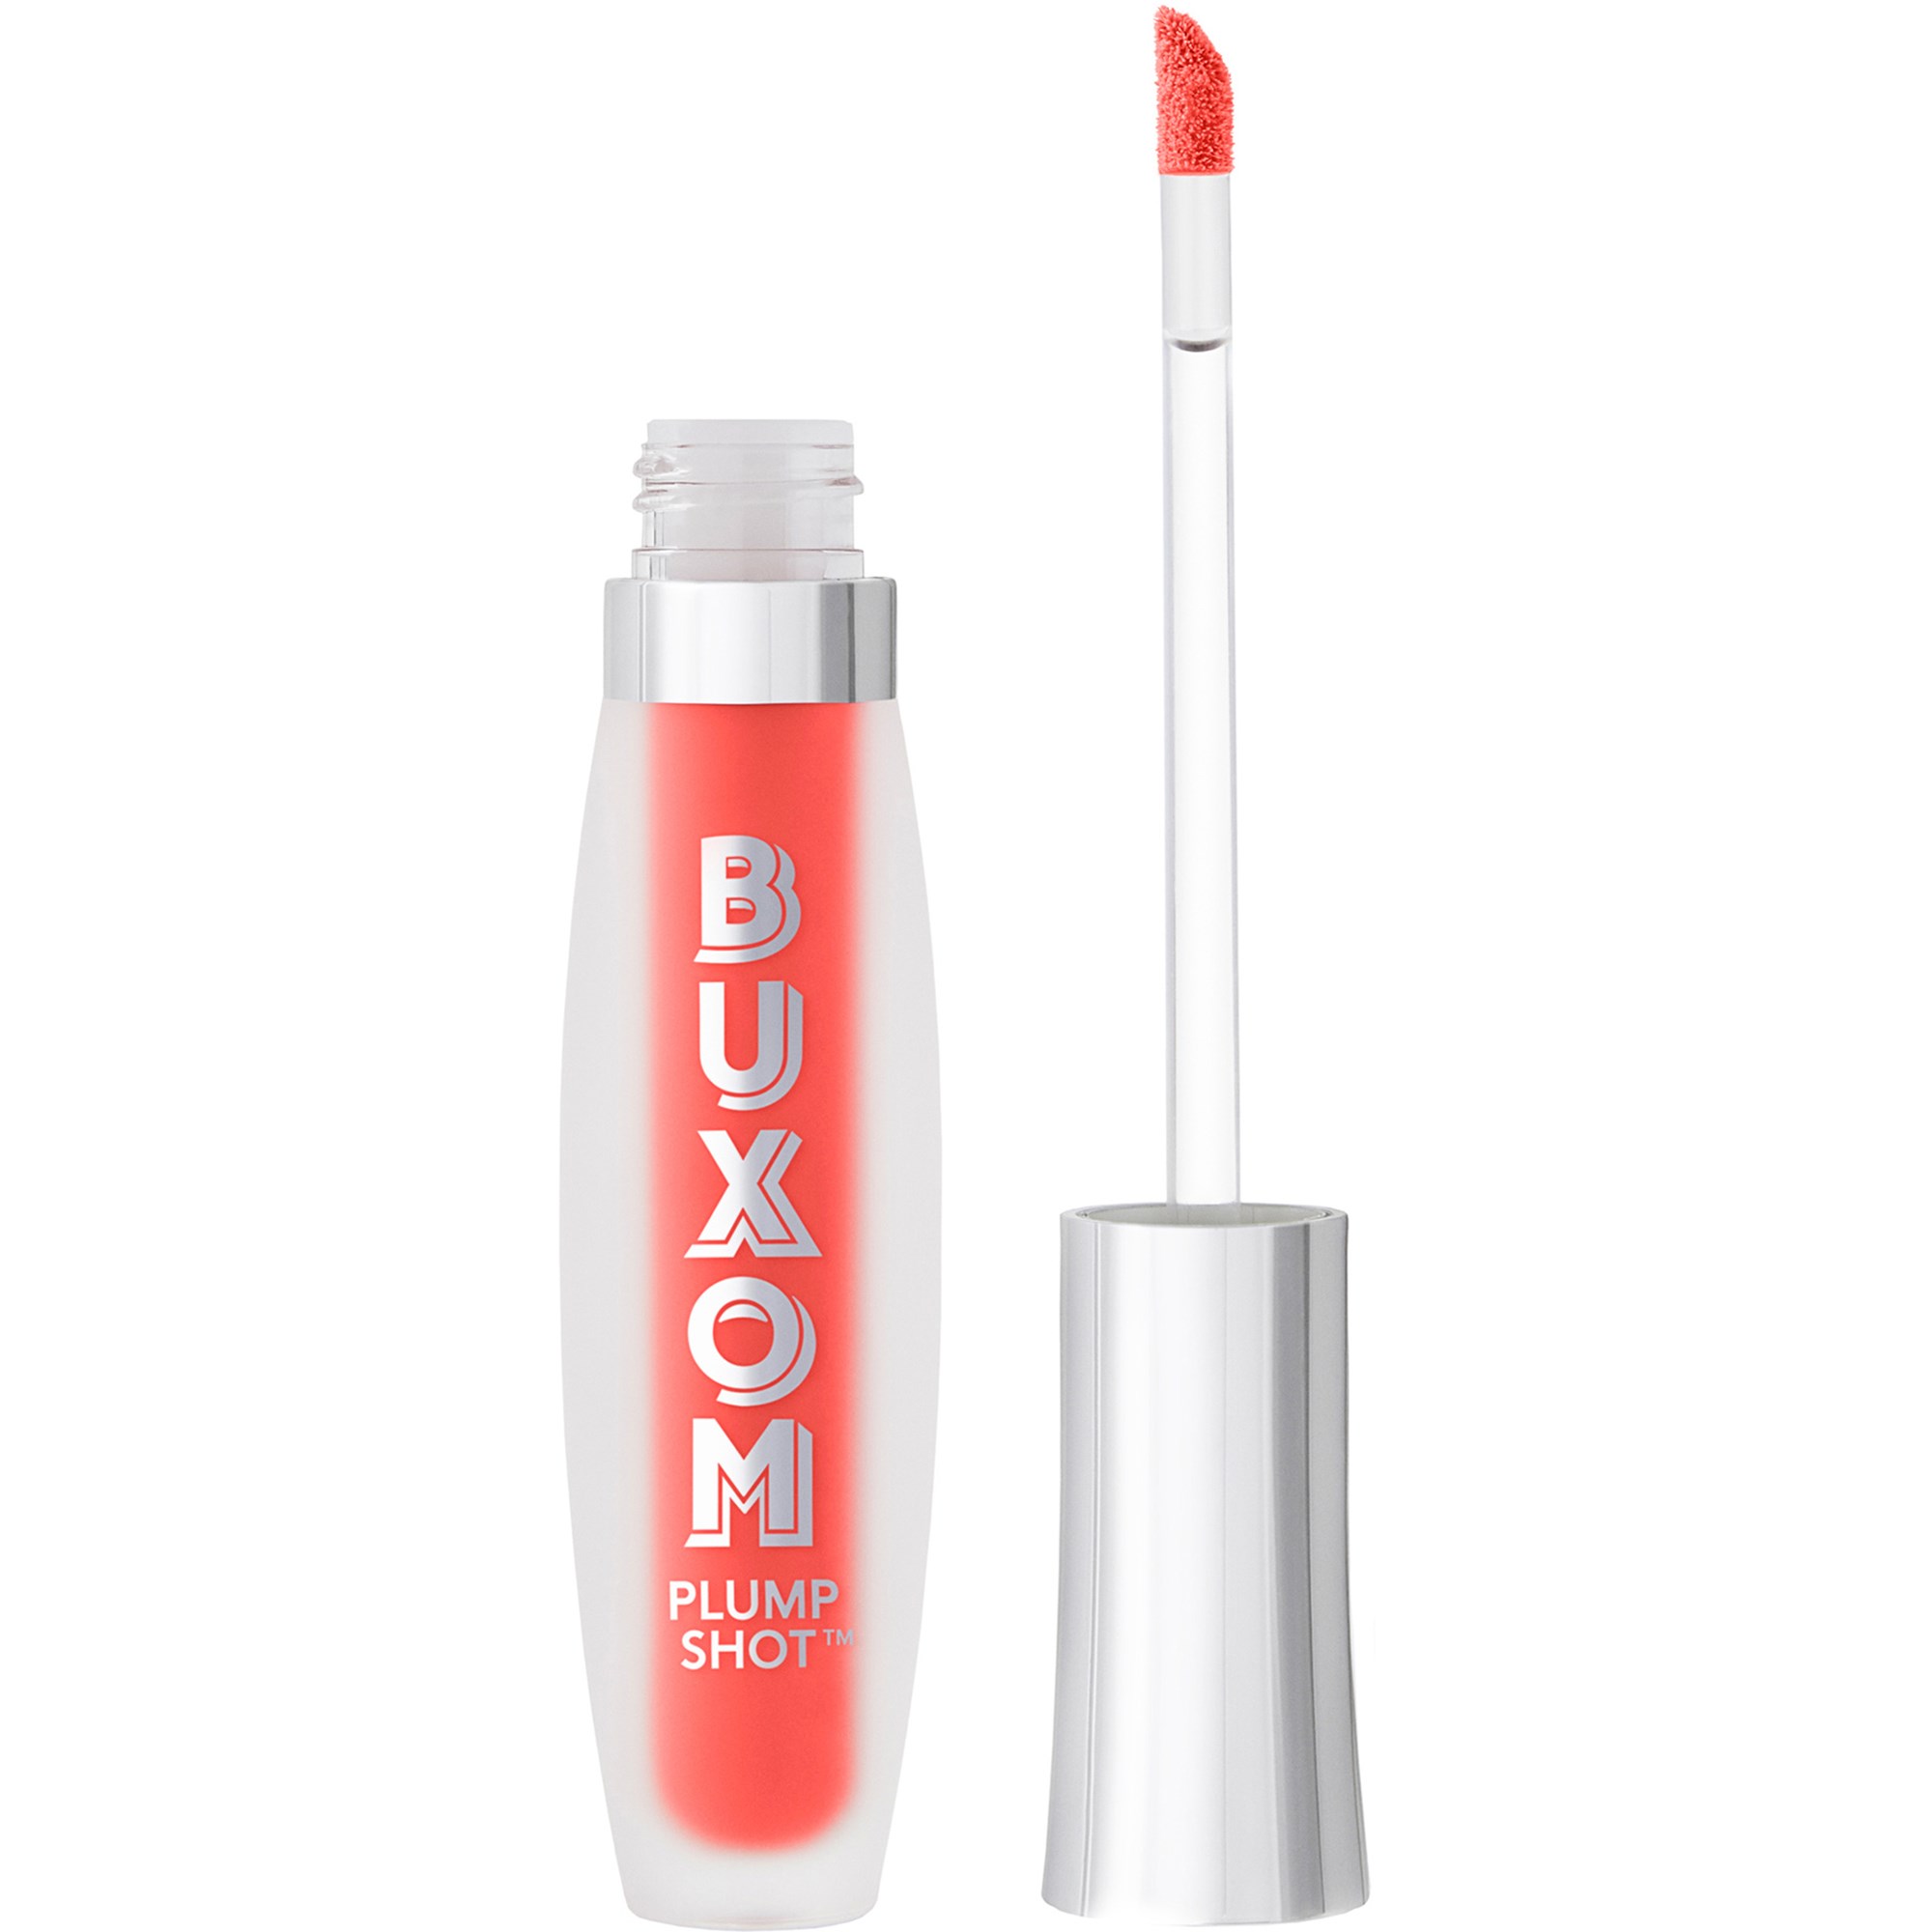 Bilde av Buxom Plump Shot™ Collagen-infused Lip Serum Koral Kiss